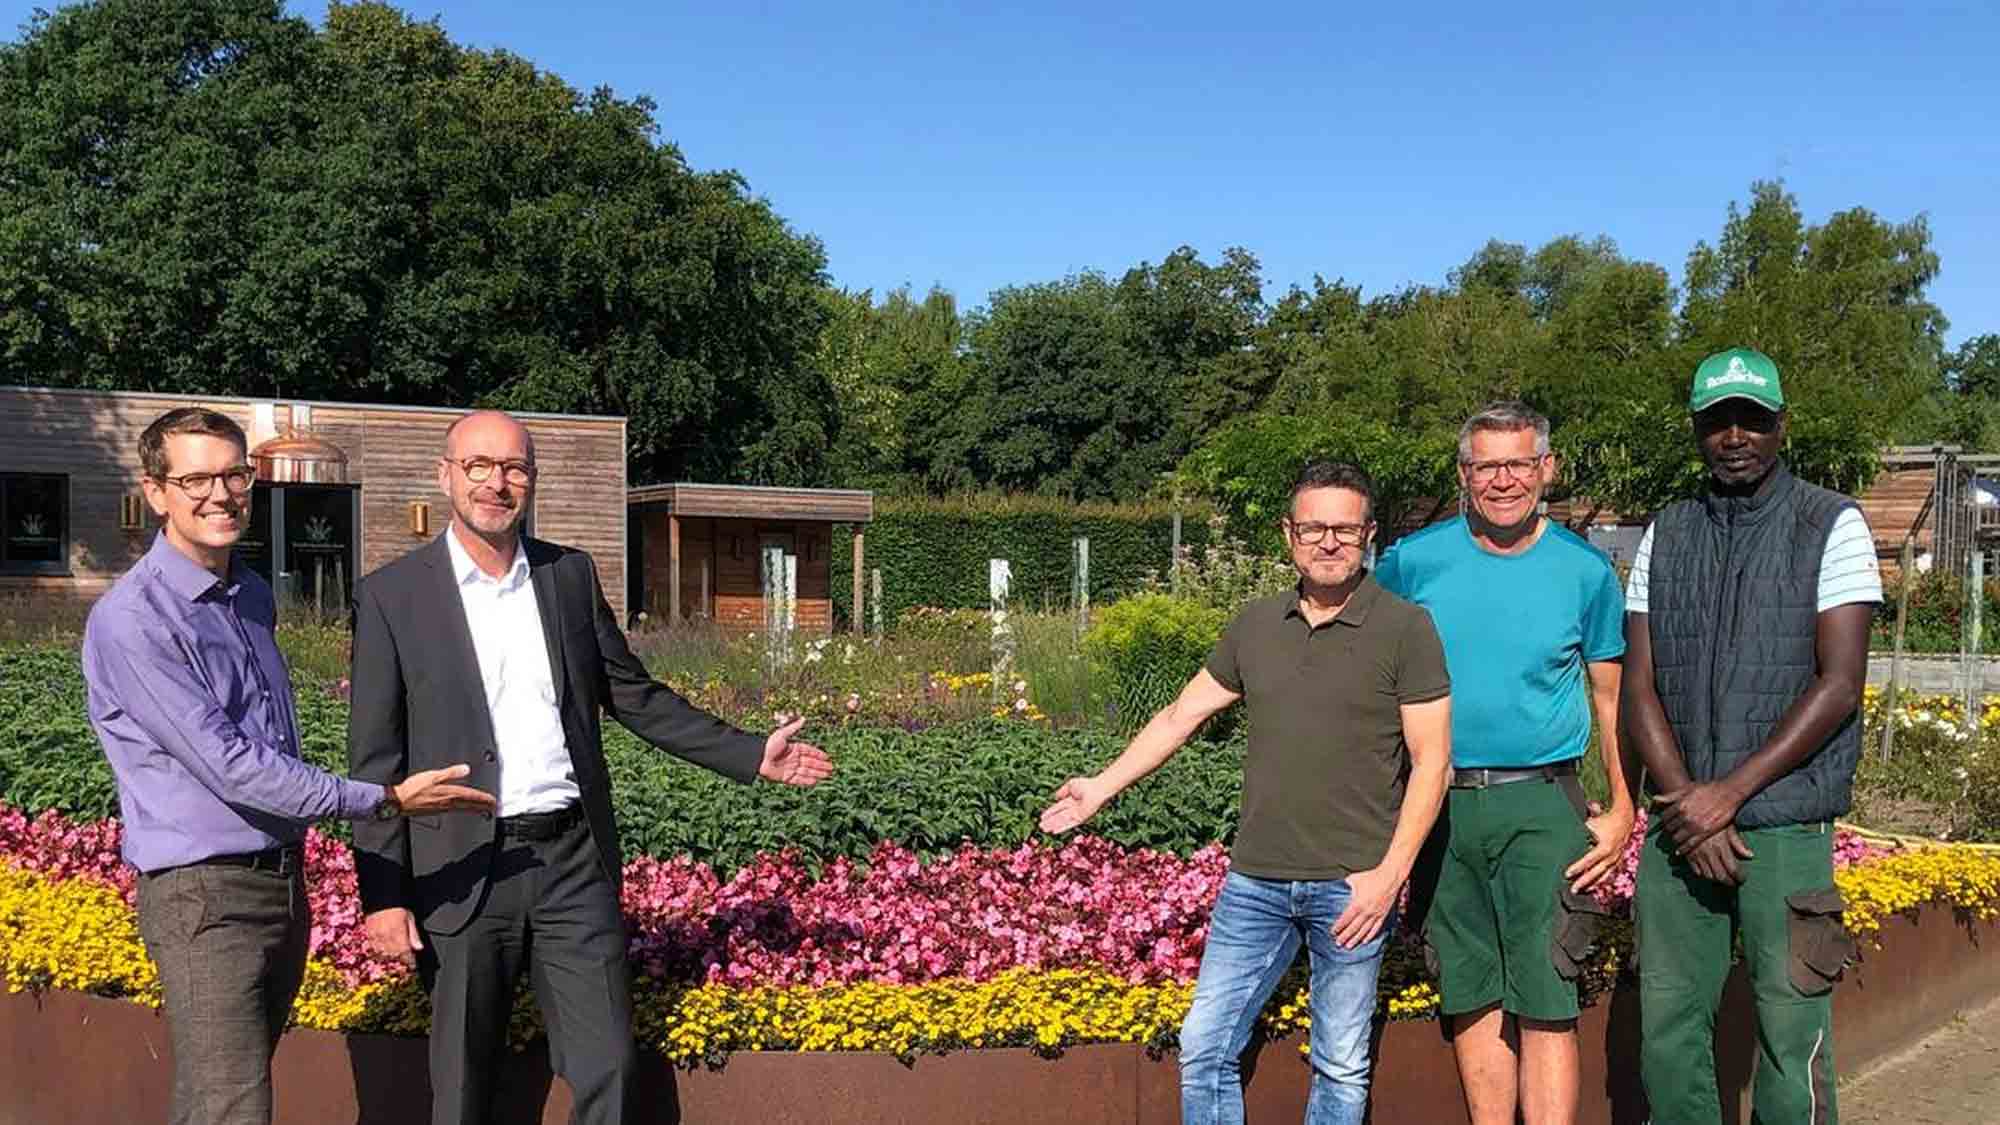 Üppige Blumenlandschaft dank großzügiger Spende, Sparkasse Gütersloh Rietberg Versmold unterstützt den Gartenschaupark Rietberg